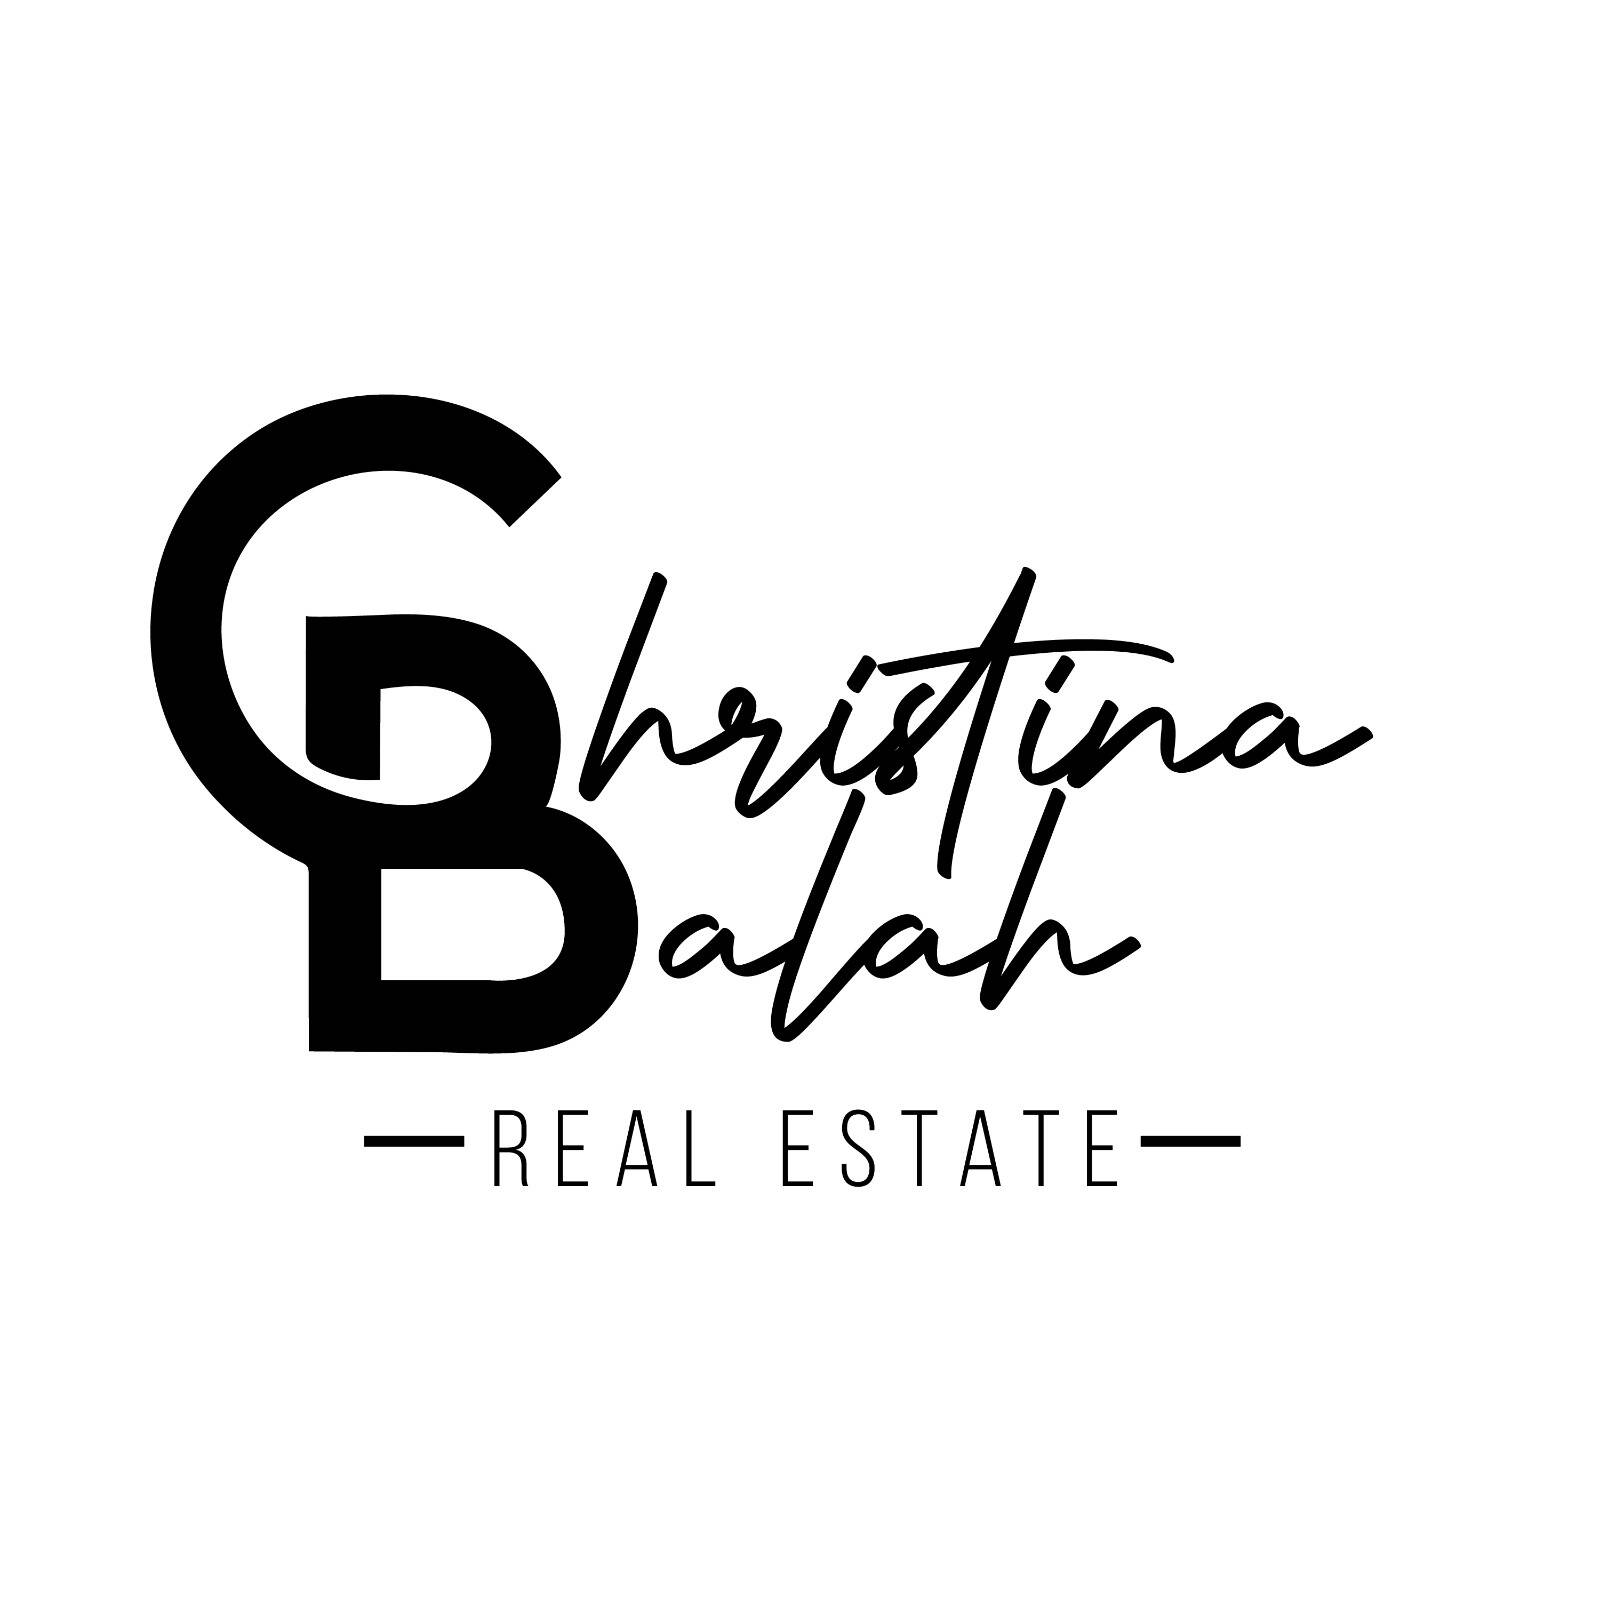 Christina Balah Real Estate